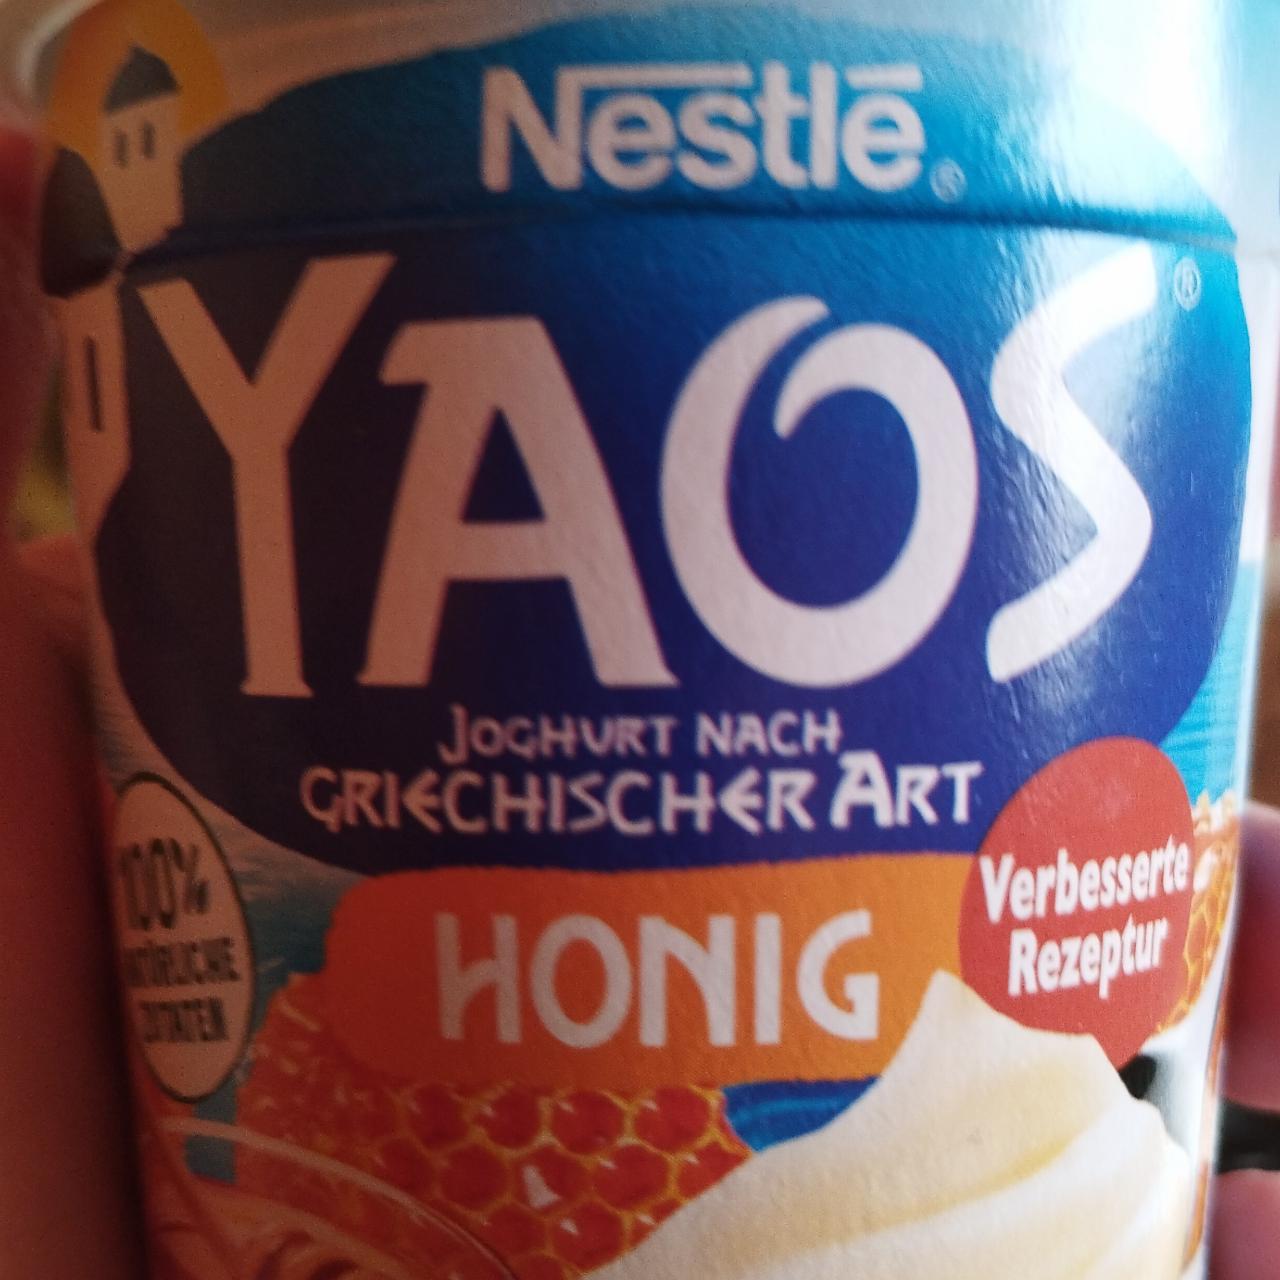 Fotografie - Yaos Joghurt nach griechscher art hong Nestlé